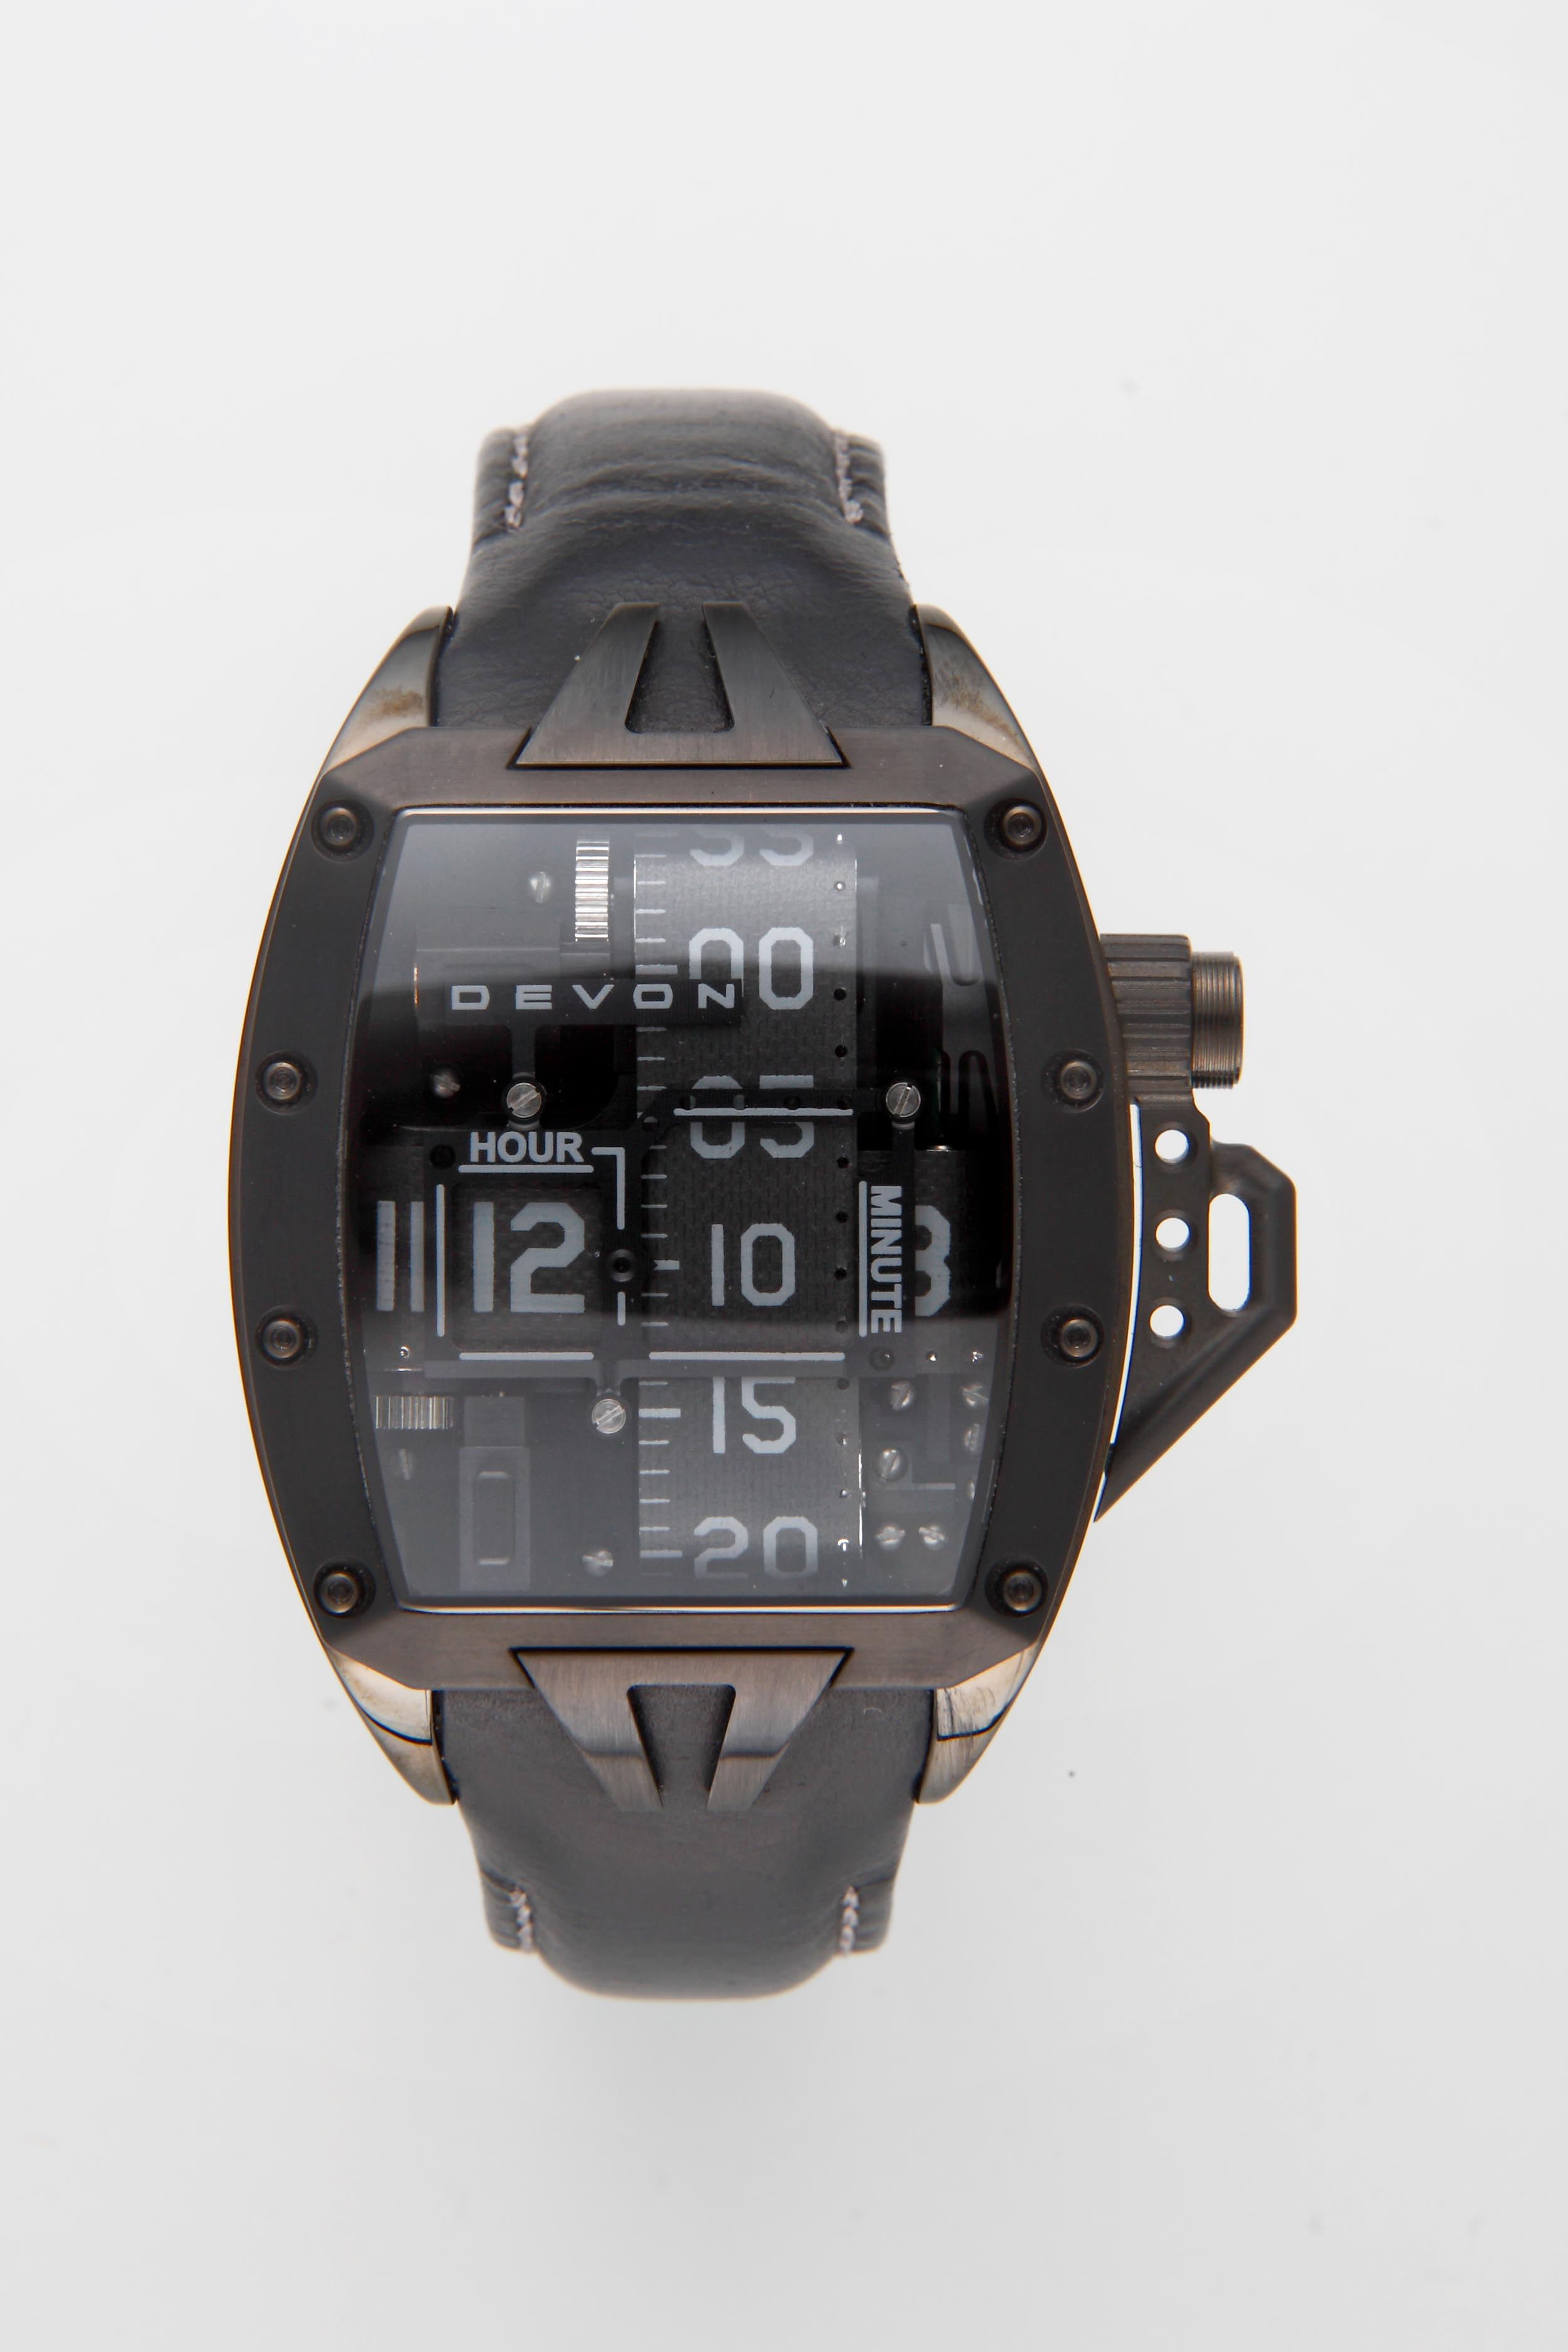 デヴォン・ワークス・タイムピース(DEVON) | ブランド腕時計の正規販売 